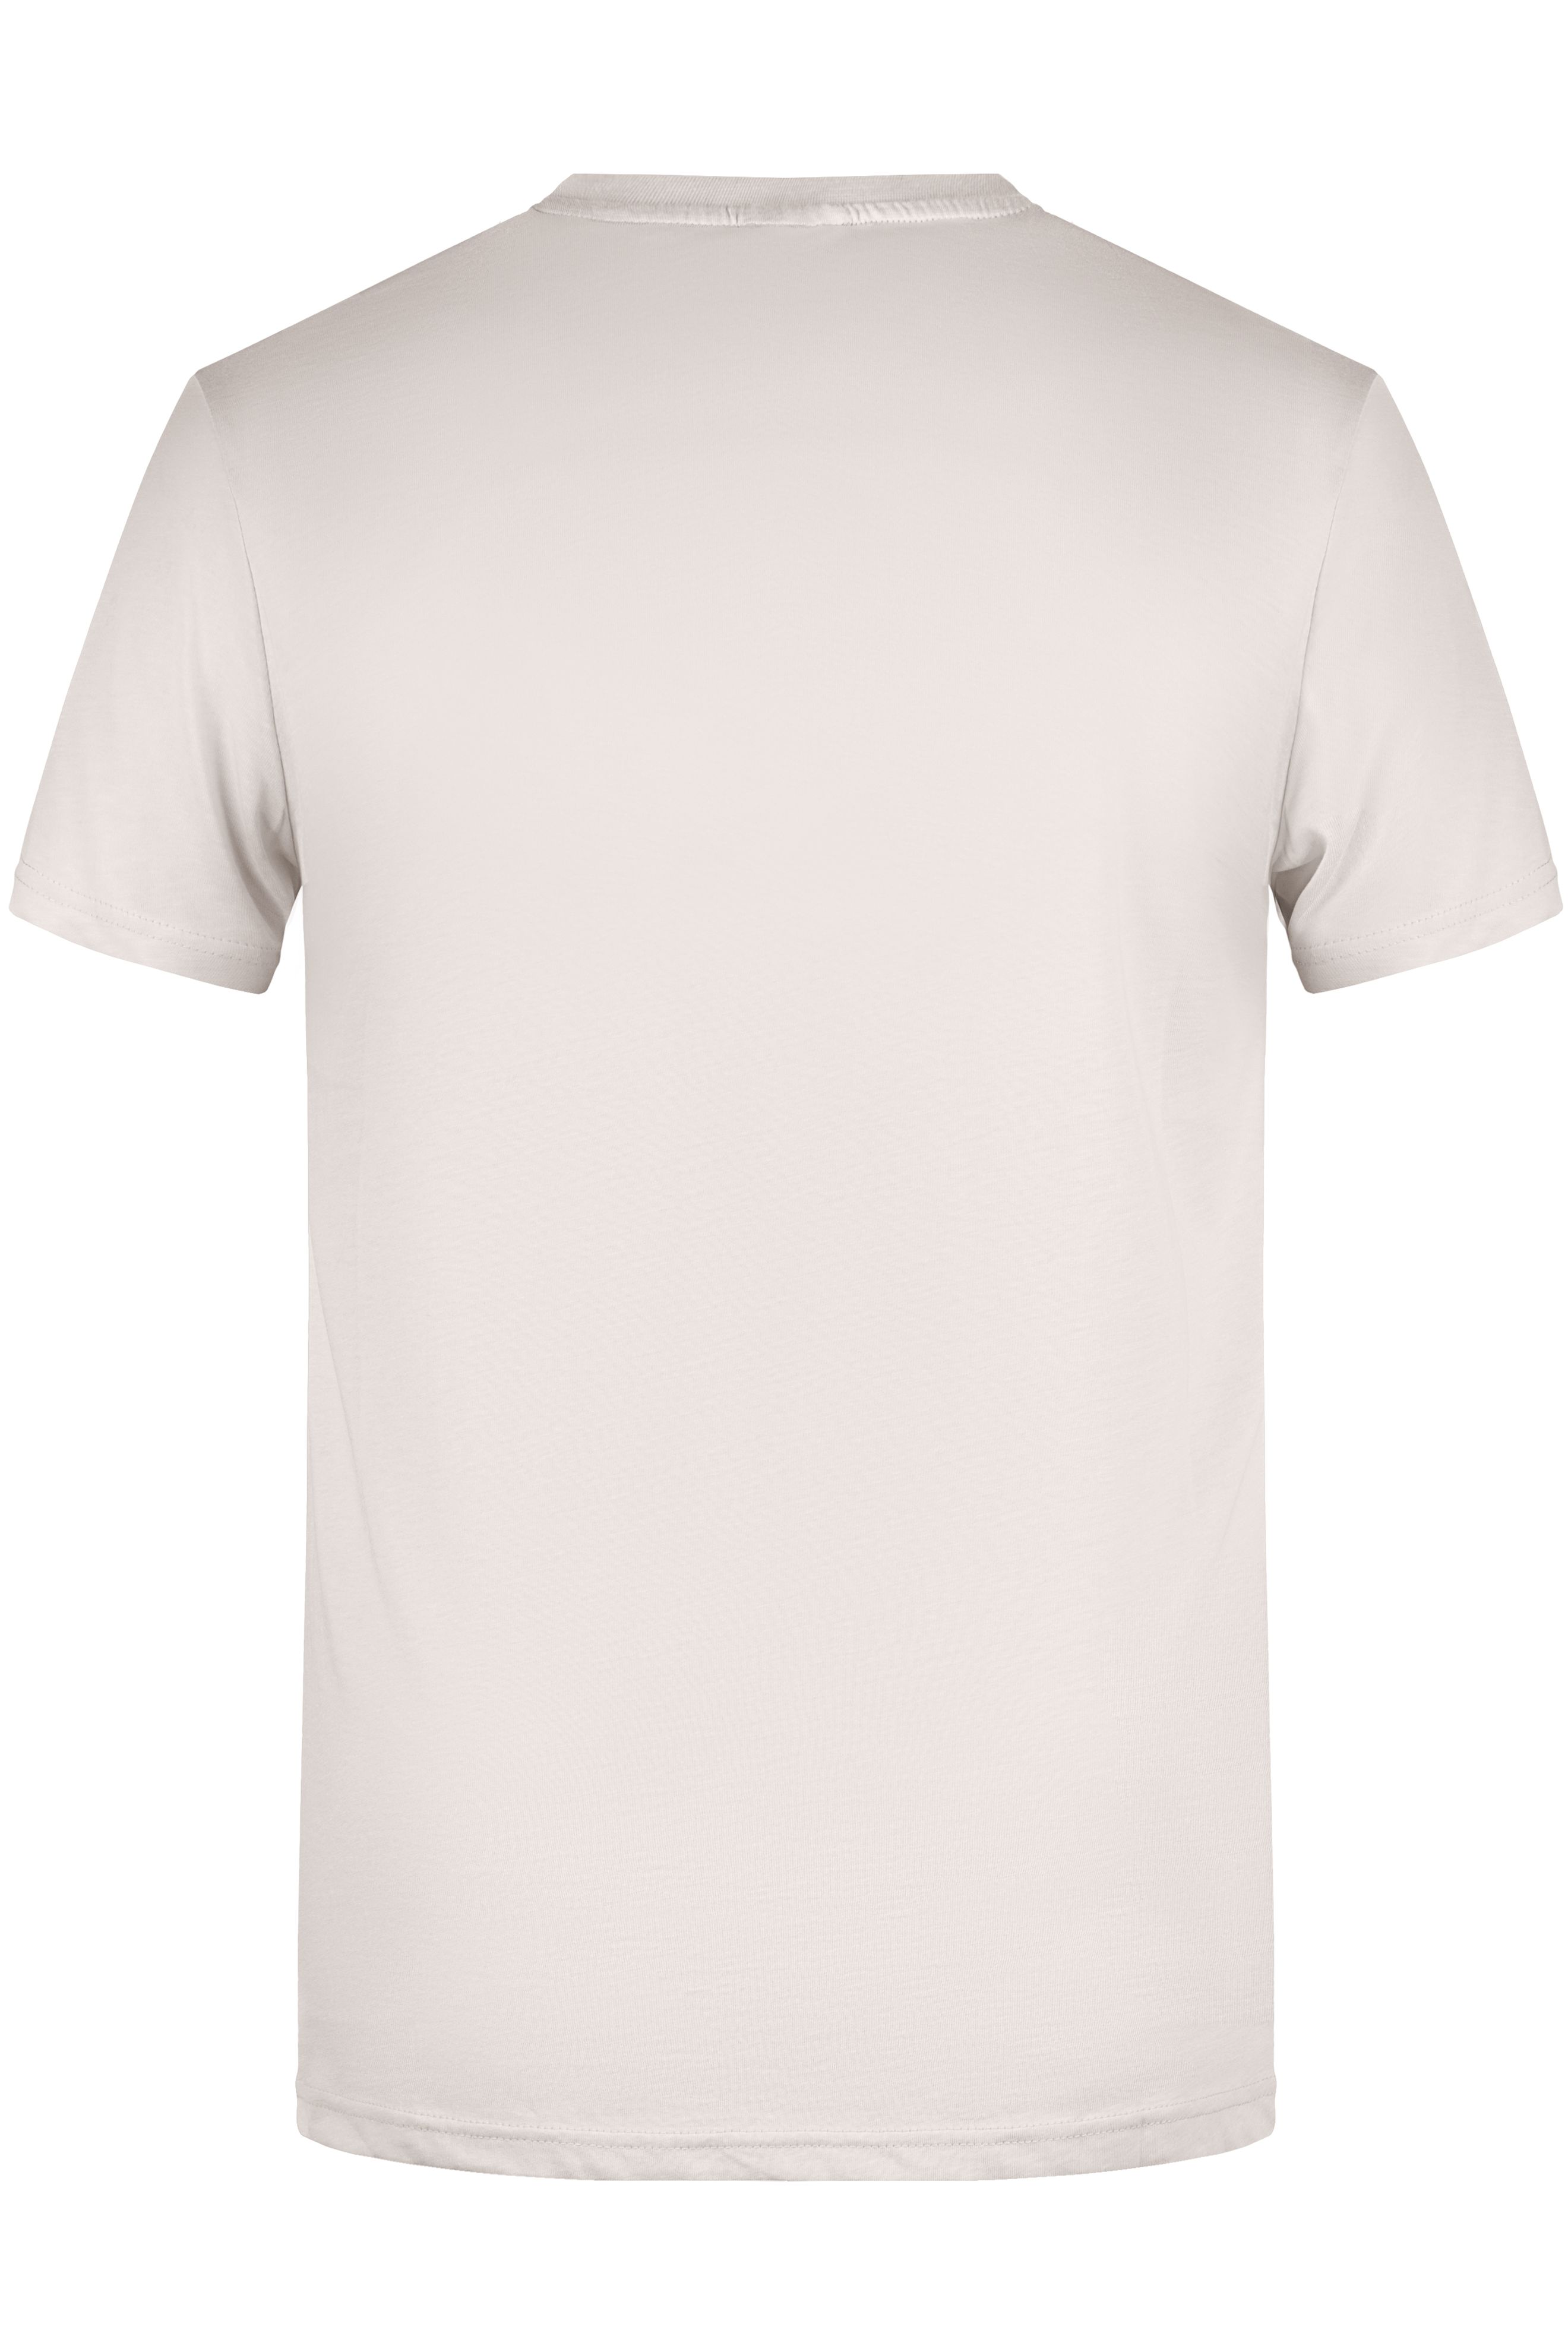 Men's Basic-T 8008 Herren T-Shirt in klassischer Form